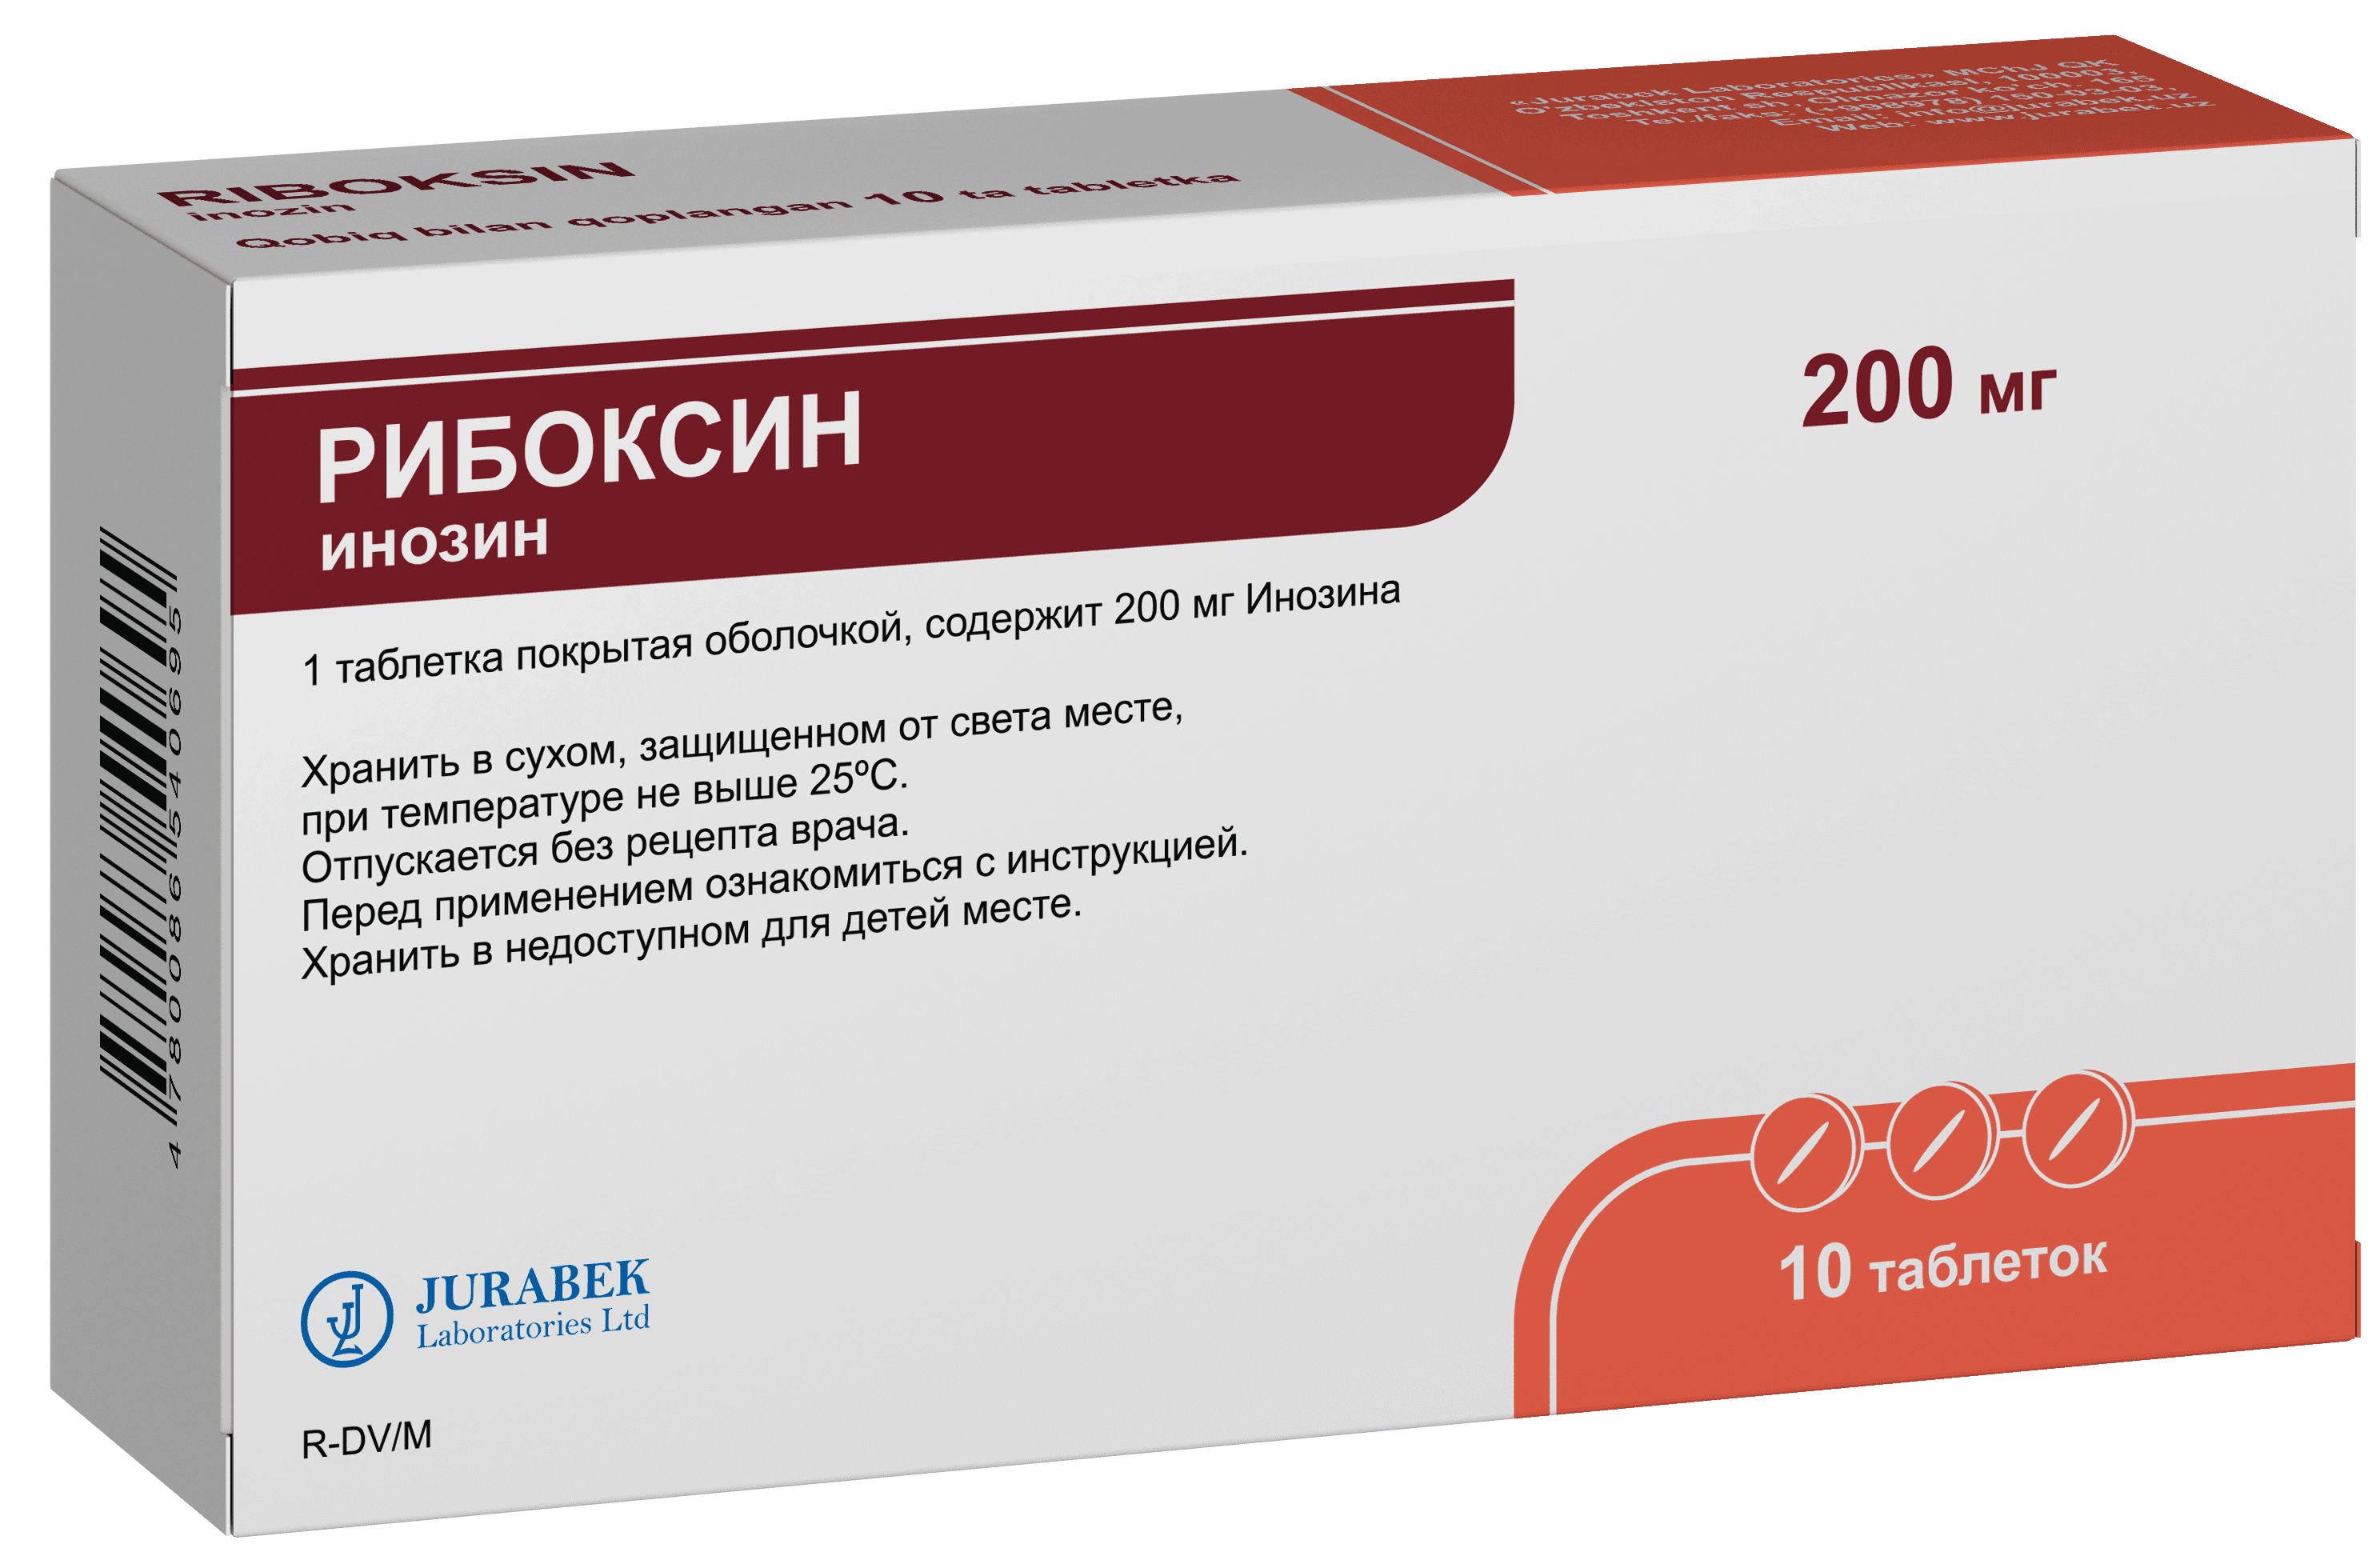 RIBOKSIN tabletkalari 200mg N10